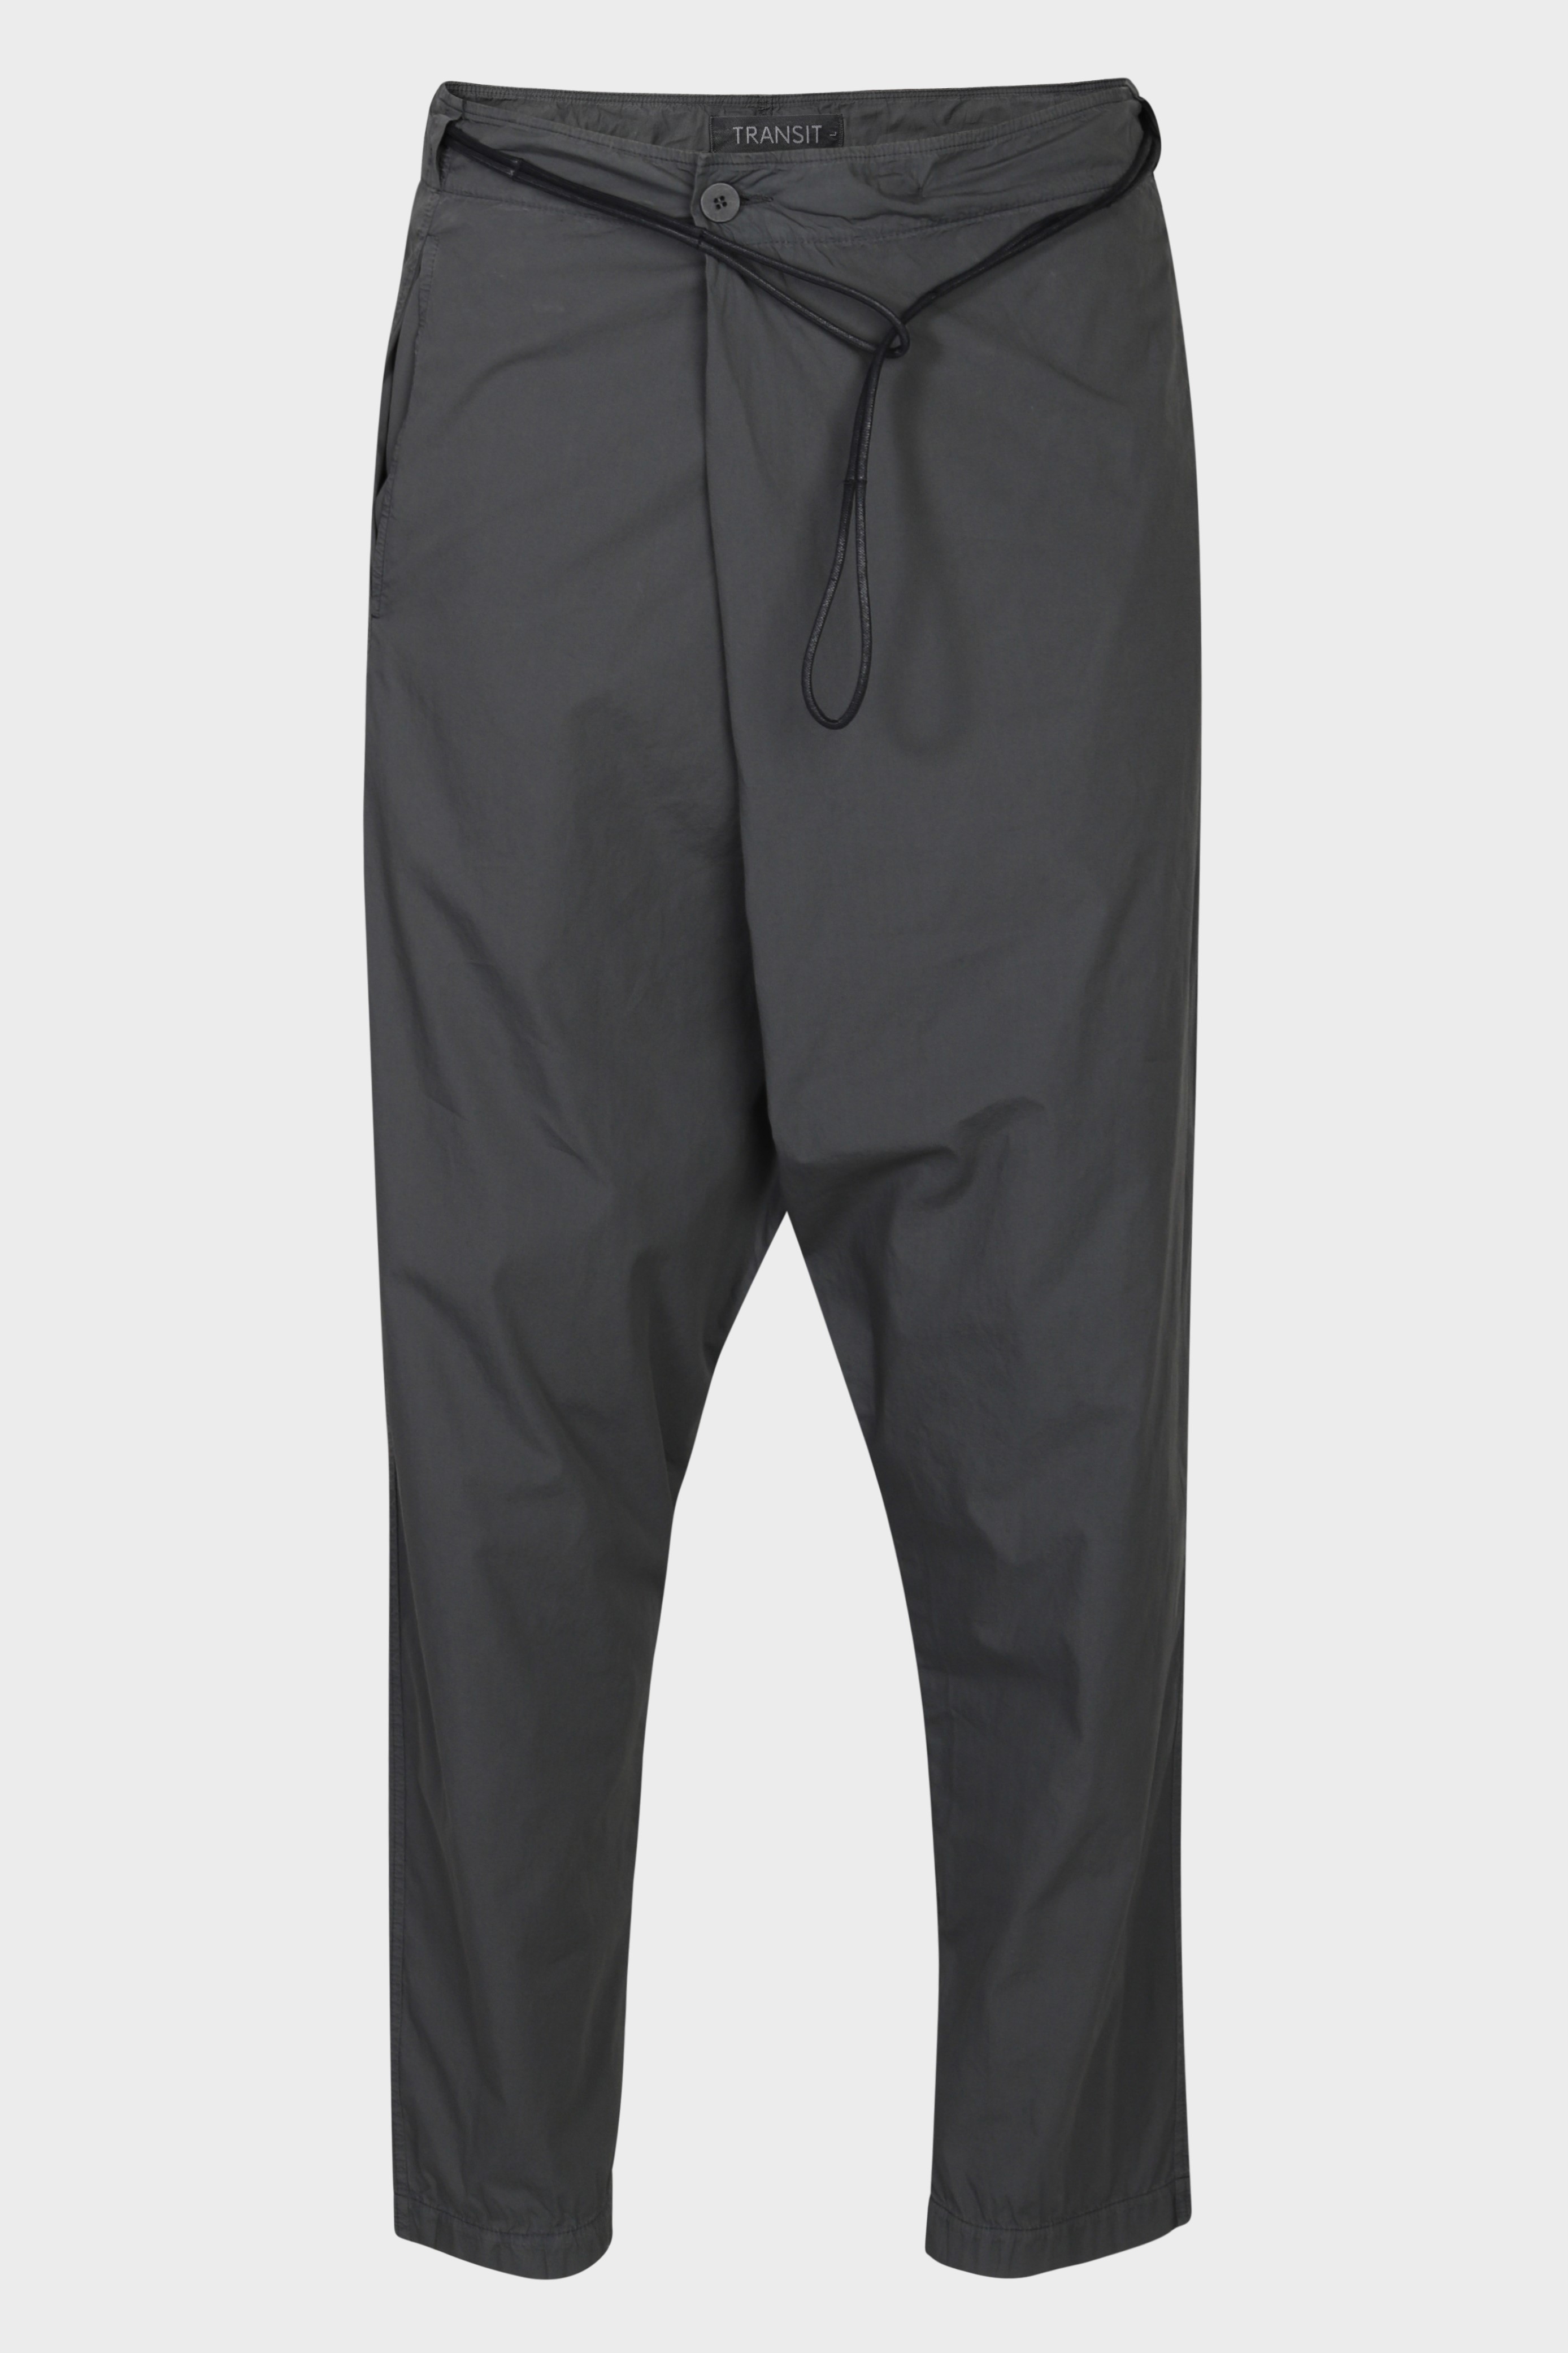 TRANSIT UOMO Light Cotton Pant in Dark Grey